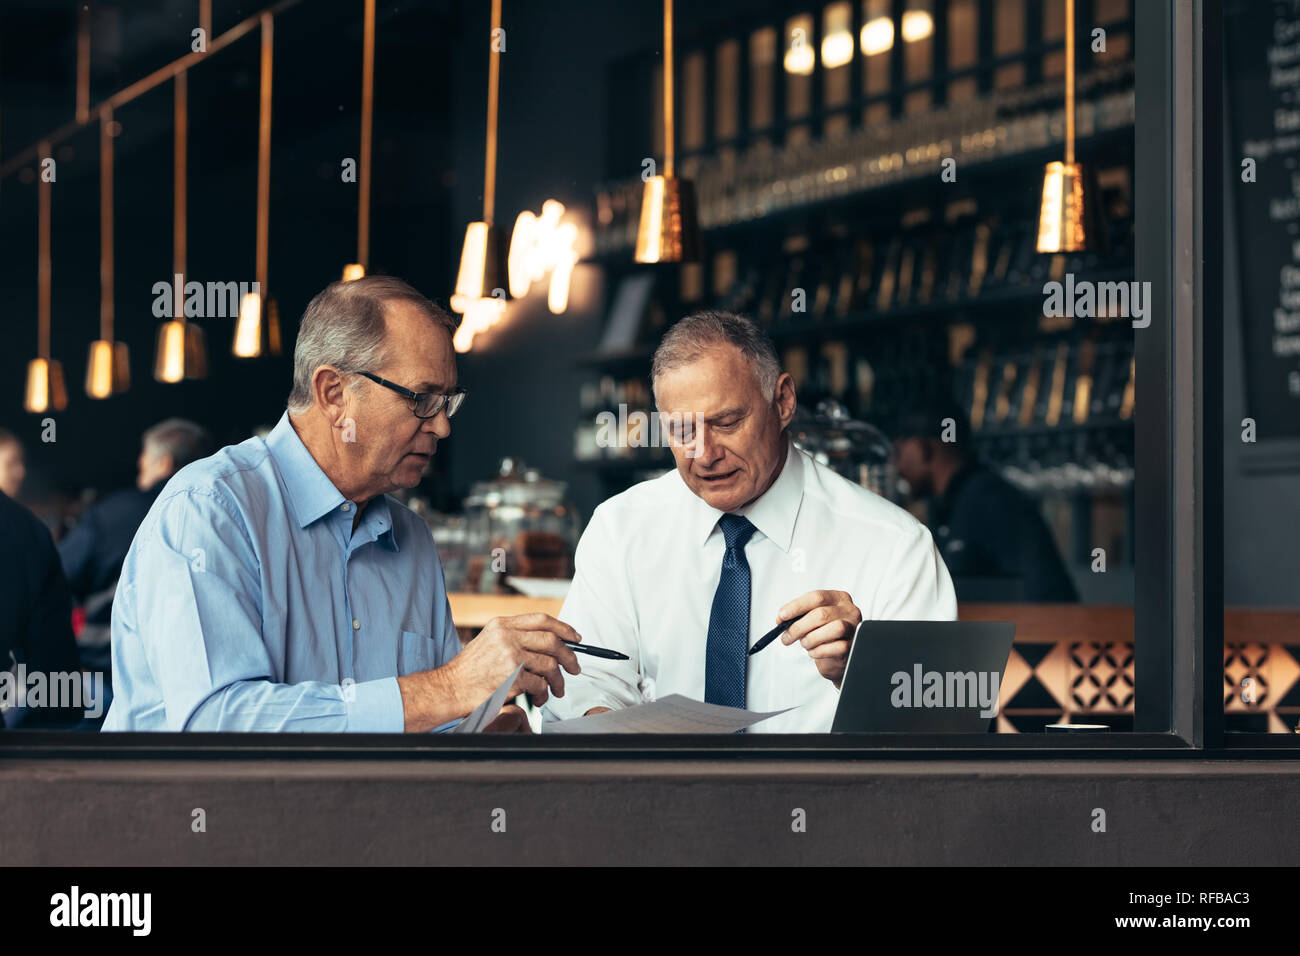 Deux personnes dans le restaurant par une séance de brainstorming sur la fenêtre Projet. Les hommes d'affaires de discuter d'un document dans un café. Banque D'Images